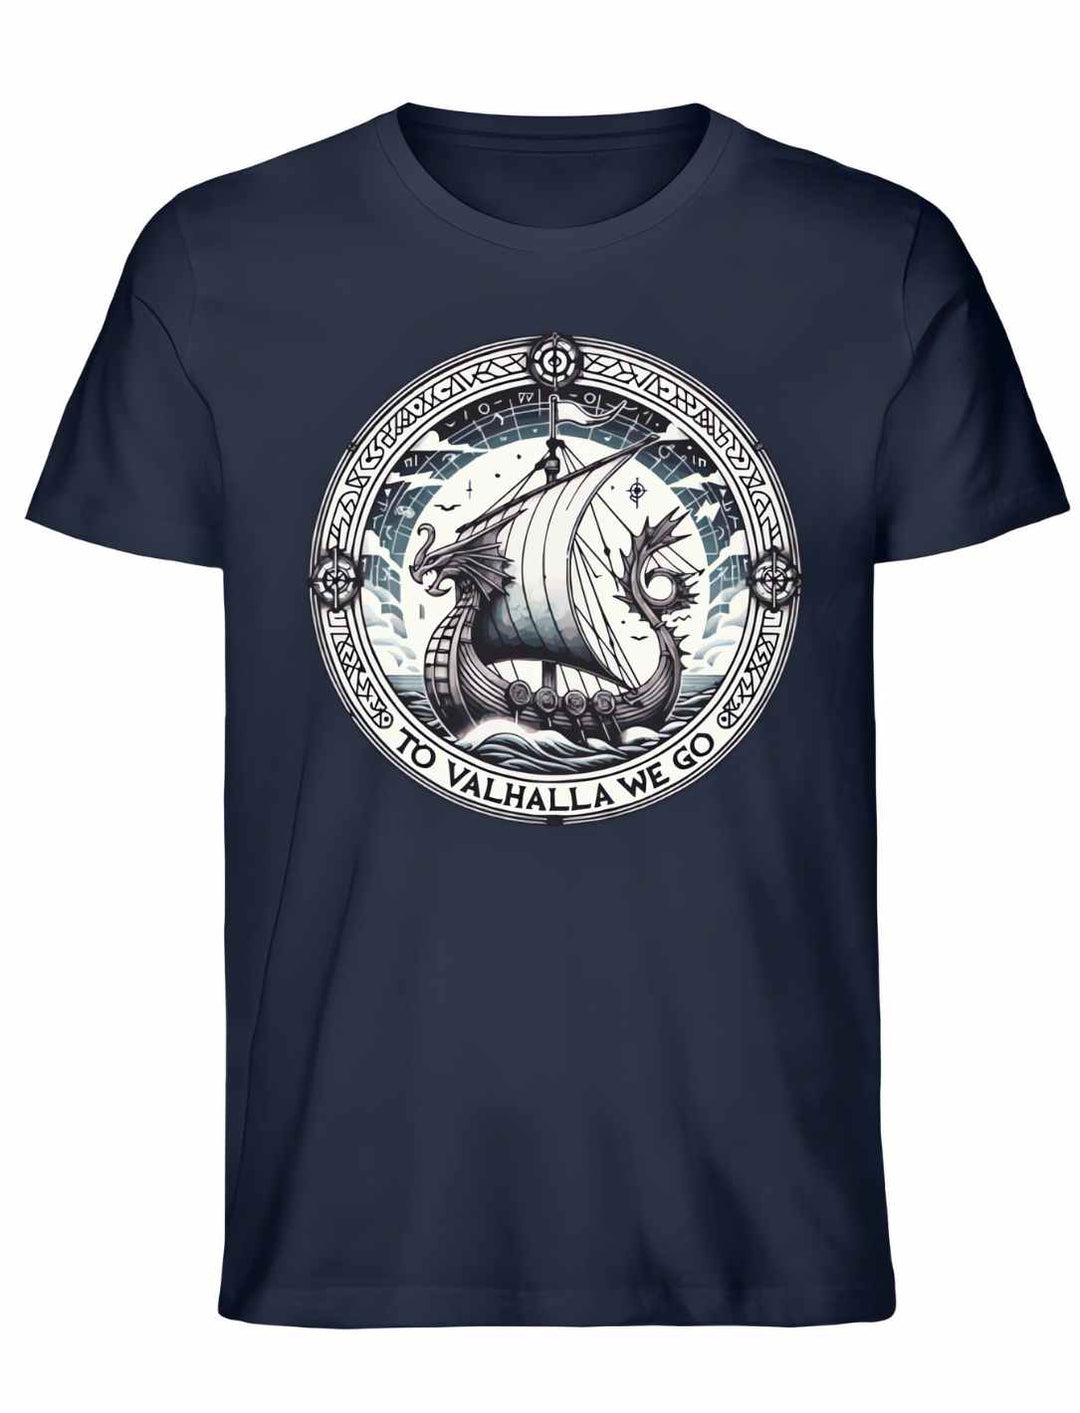 To Valhalla we go - Valhalla T-Shirt unisex in french navy